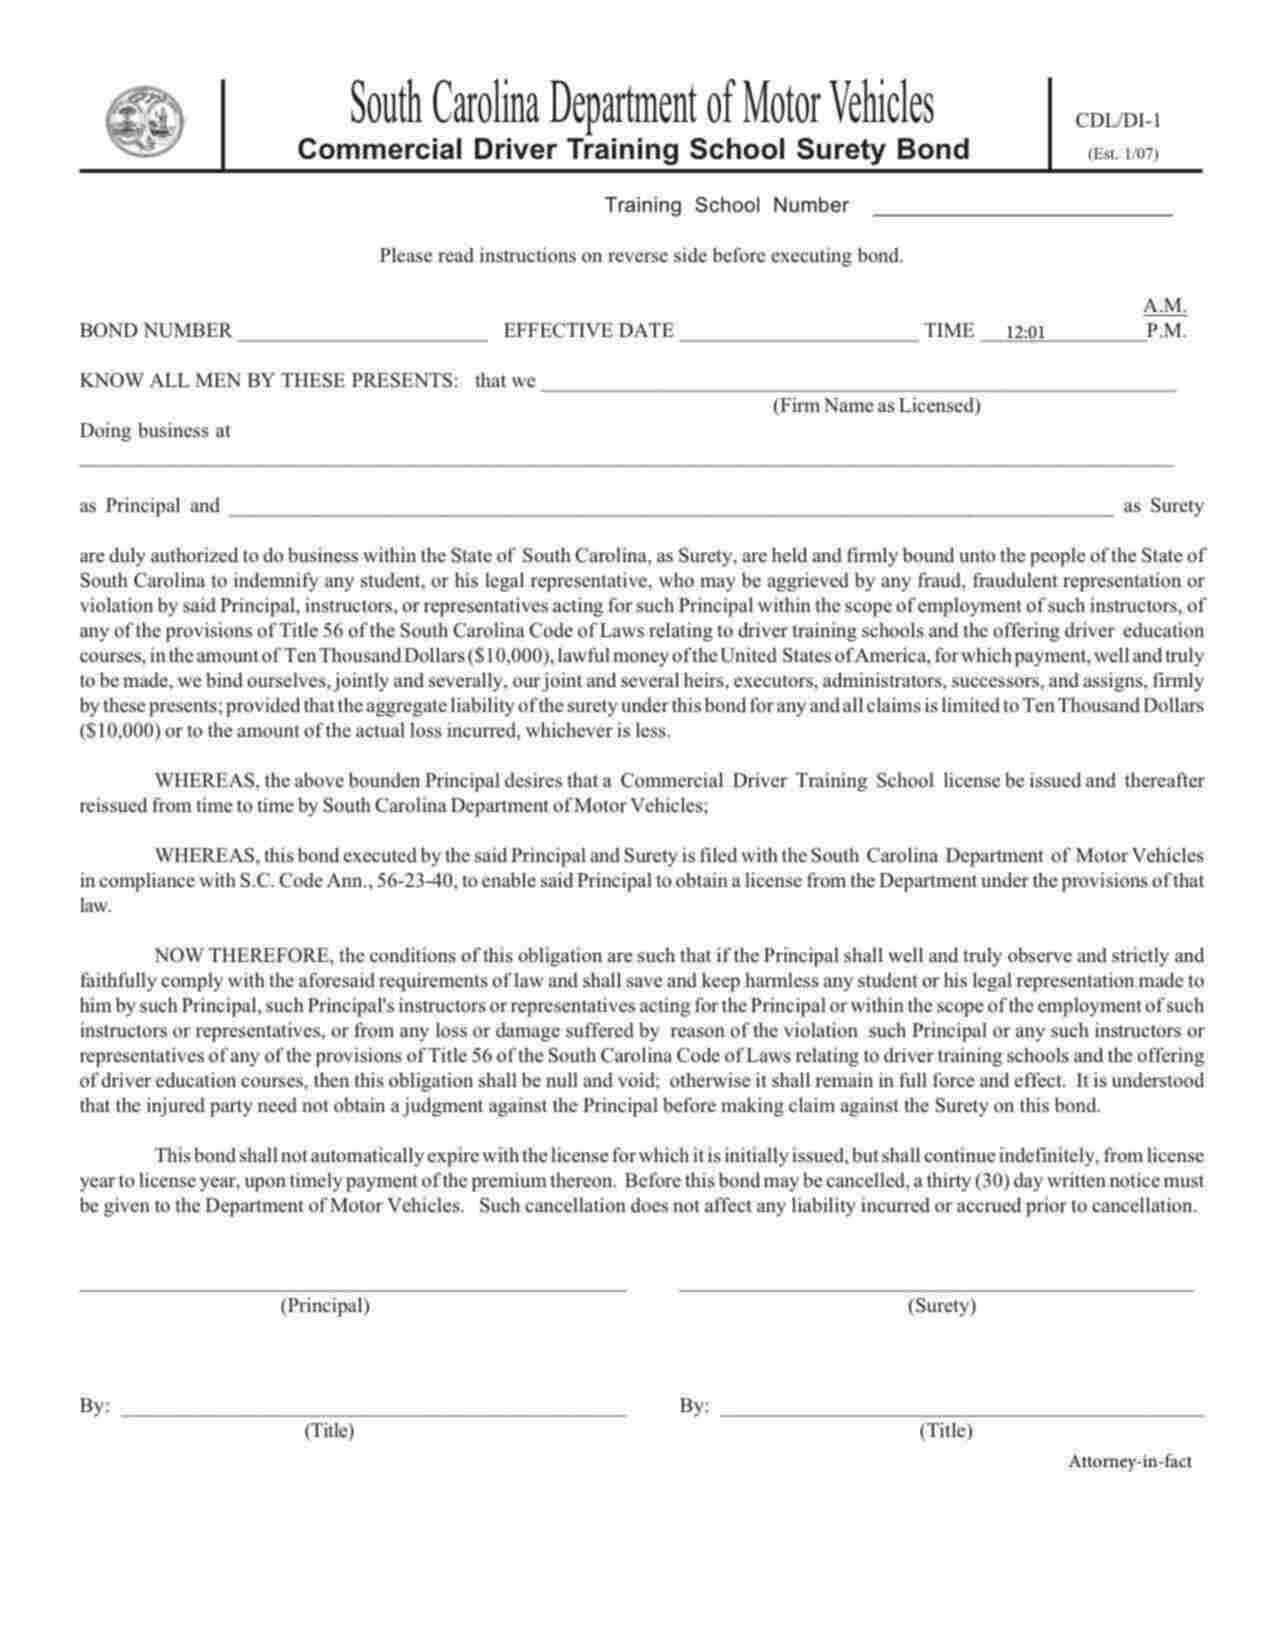 South Carolina Commercial Driver Training School Bond Form